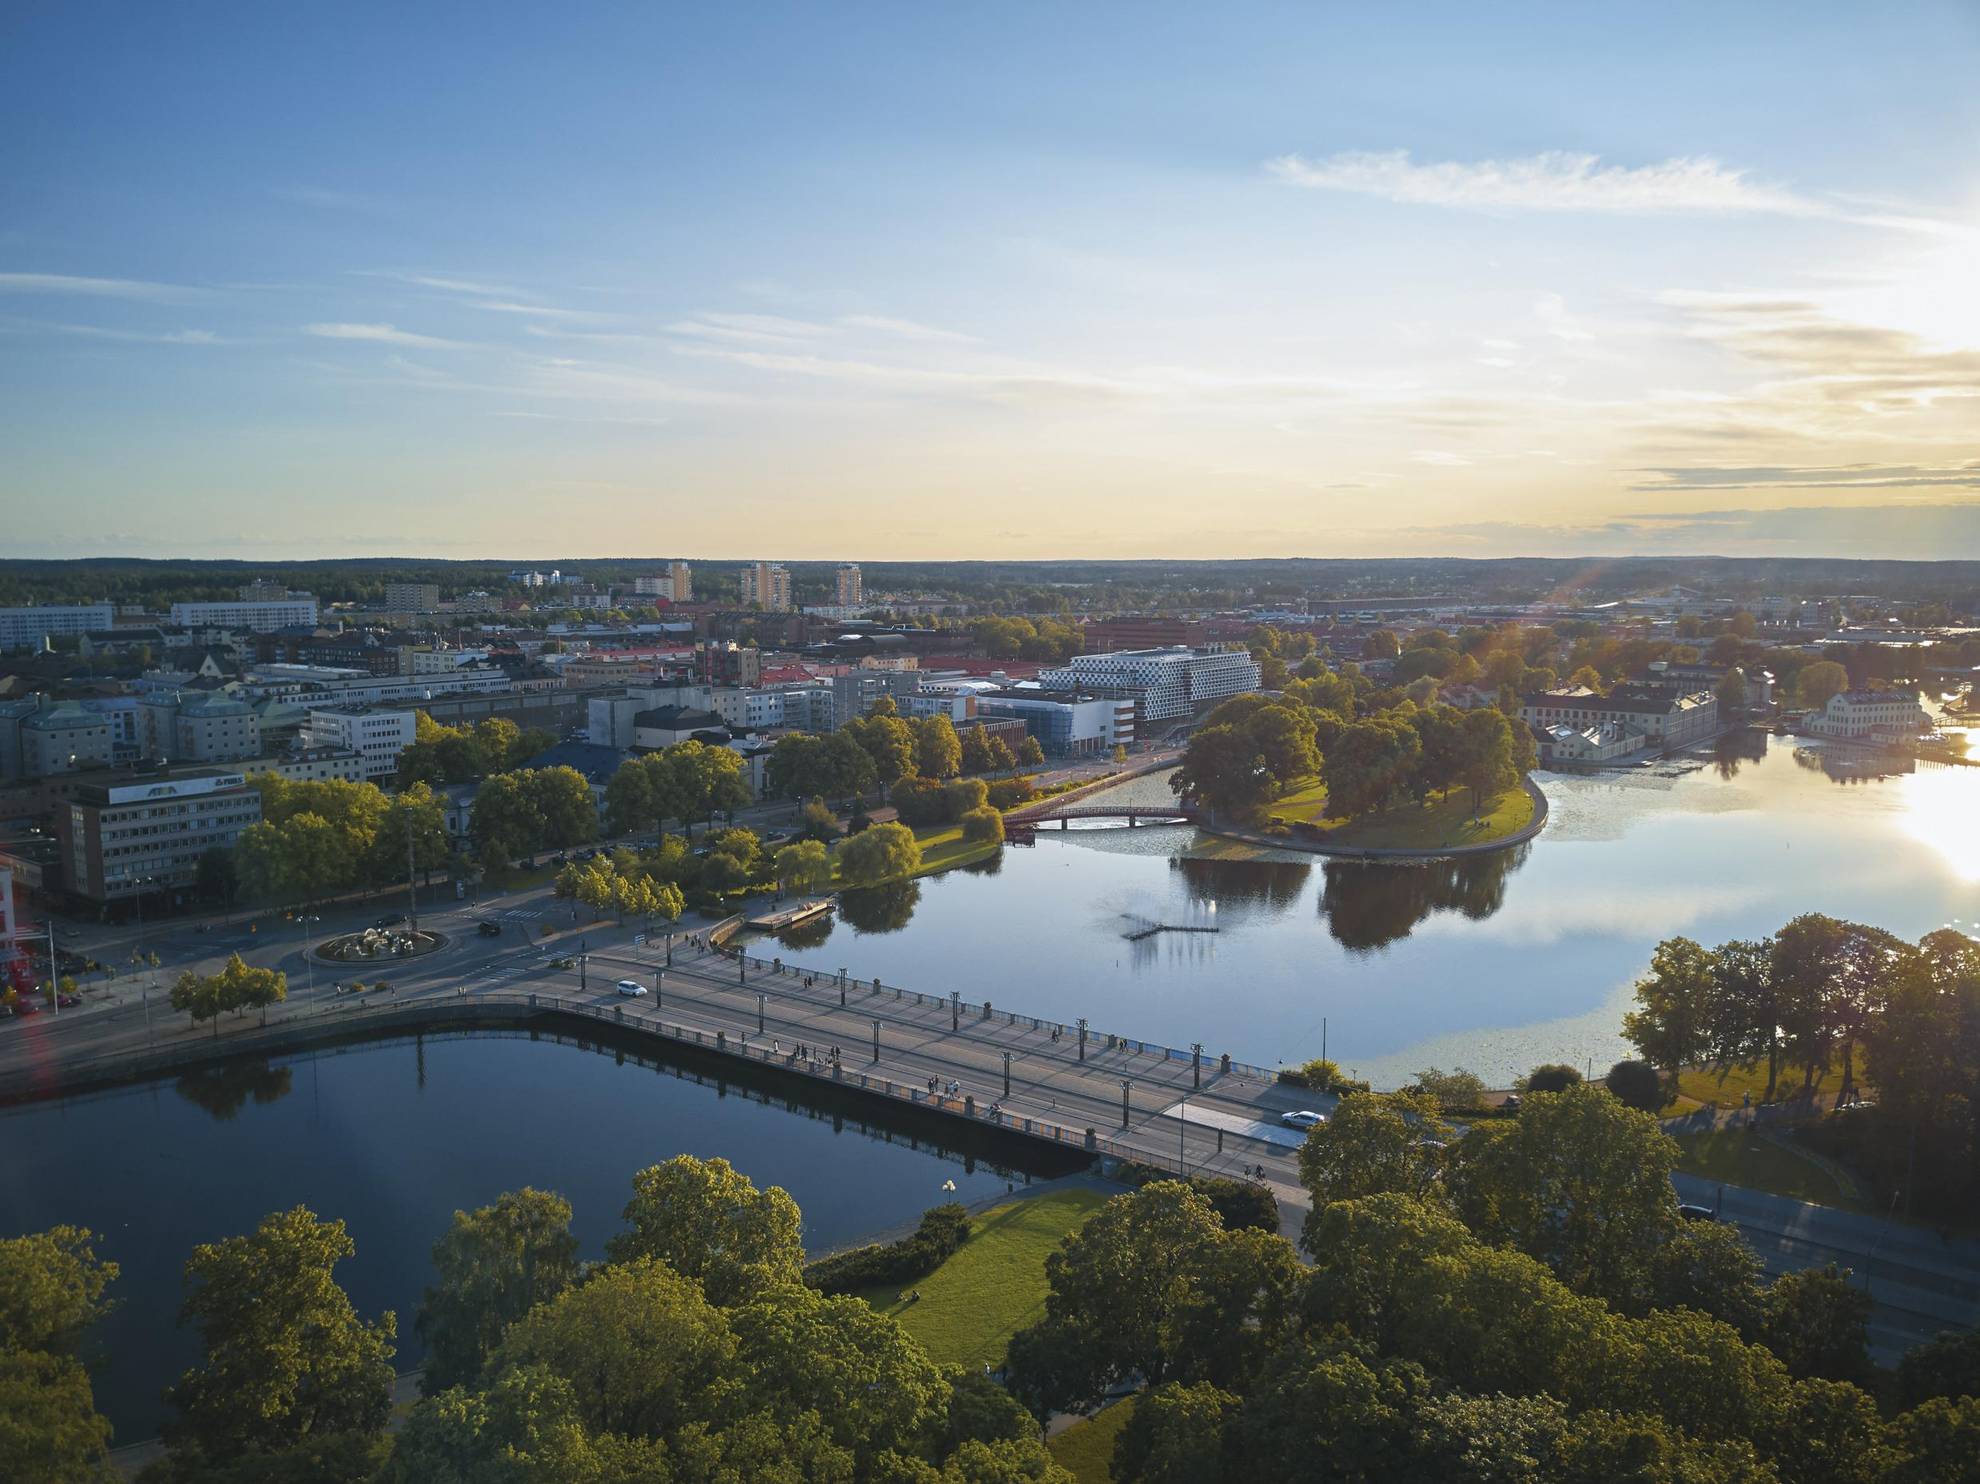 Vue aérienne d'Eskilstuna. Un pont se dresse au-dessus de la rivière Eskilstunaån et relie le centre-ville.